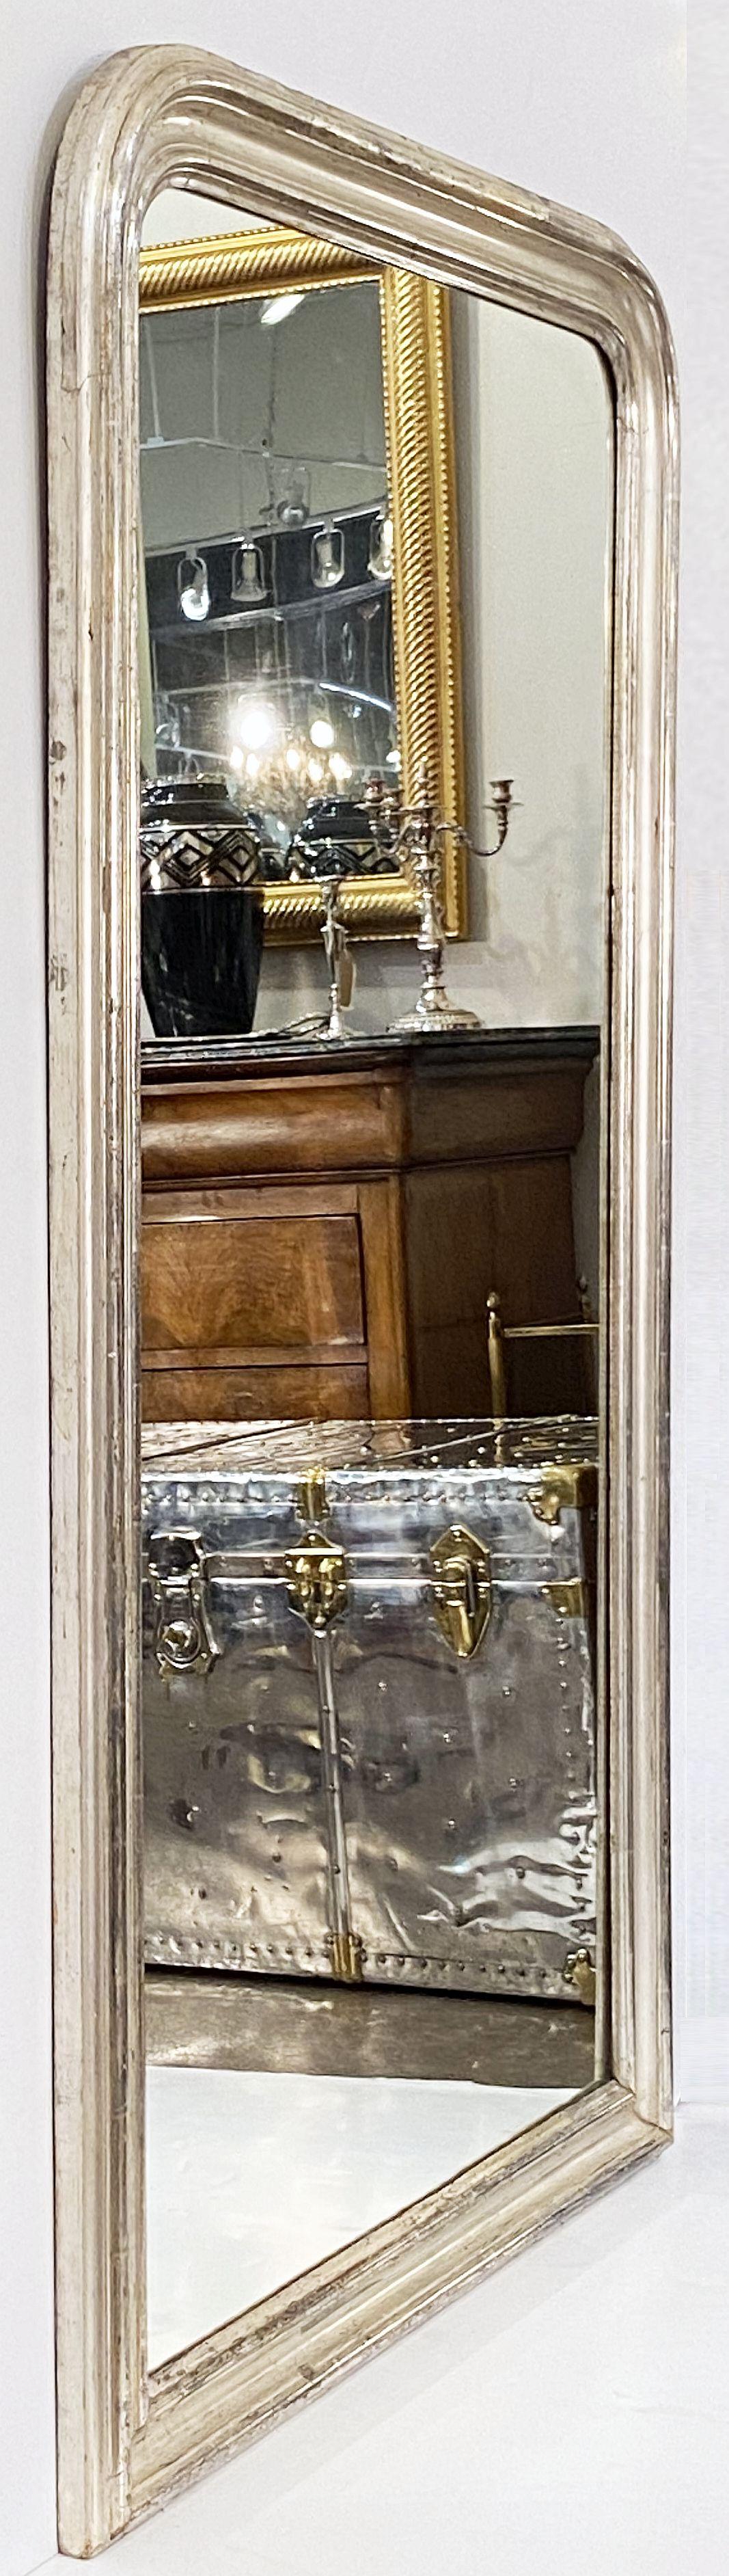 Un beau grand miroir Louis Philippe pour console murale ou d'habillage, de France, présentant une bordure moulée avec une belle feuille d'argent patinée.

Dimensions : H 62 3/4 pouces x L 37 1/4 pouces

D'autres tailles sont disponibles dans ce